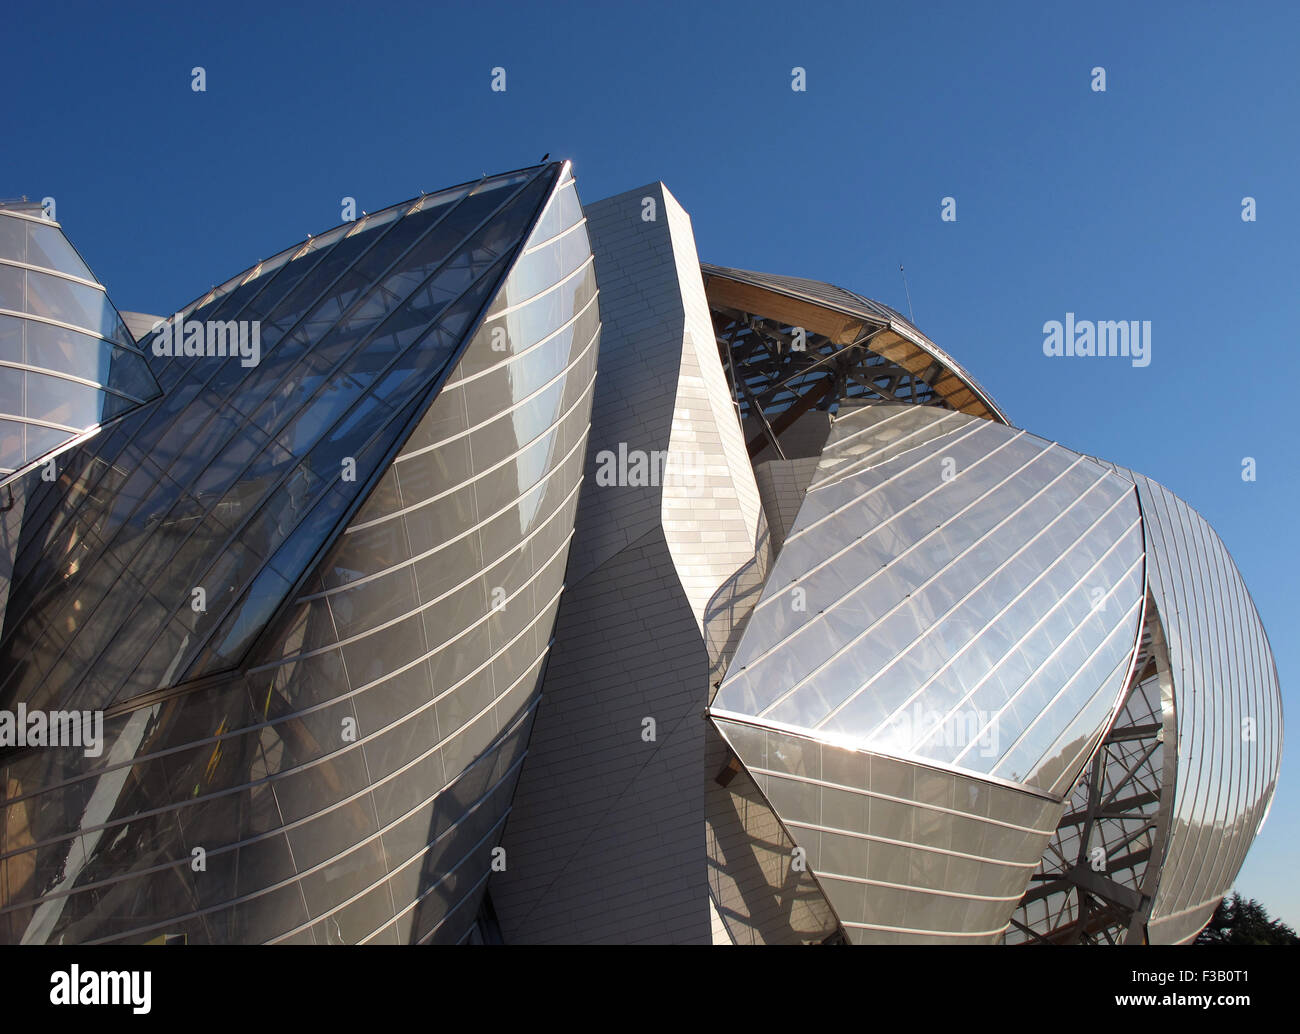 Fondation Louis Vuitton,Frank Gehry architect,Museum of contemporary art,Bois de Boulogne,Paris,France Stock Photo